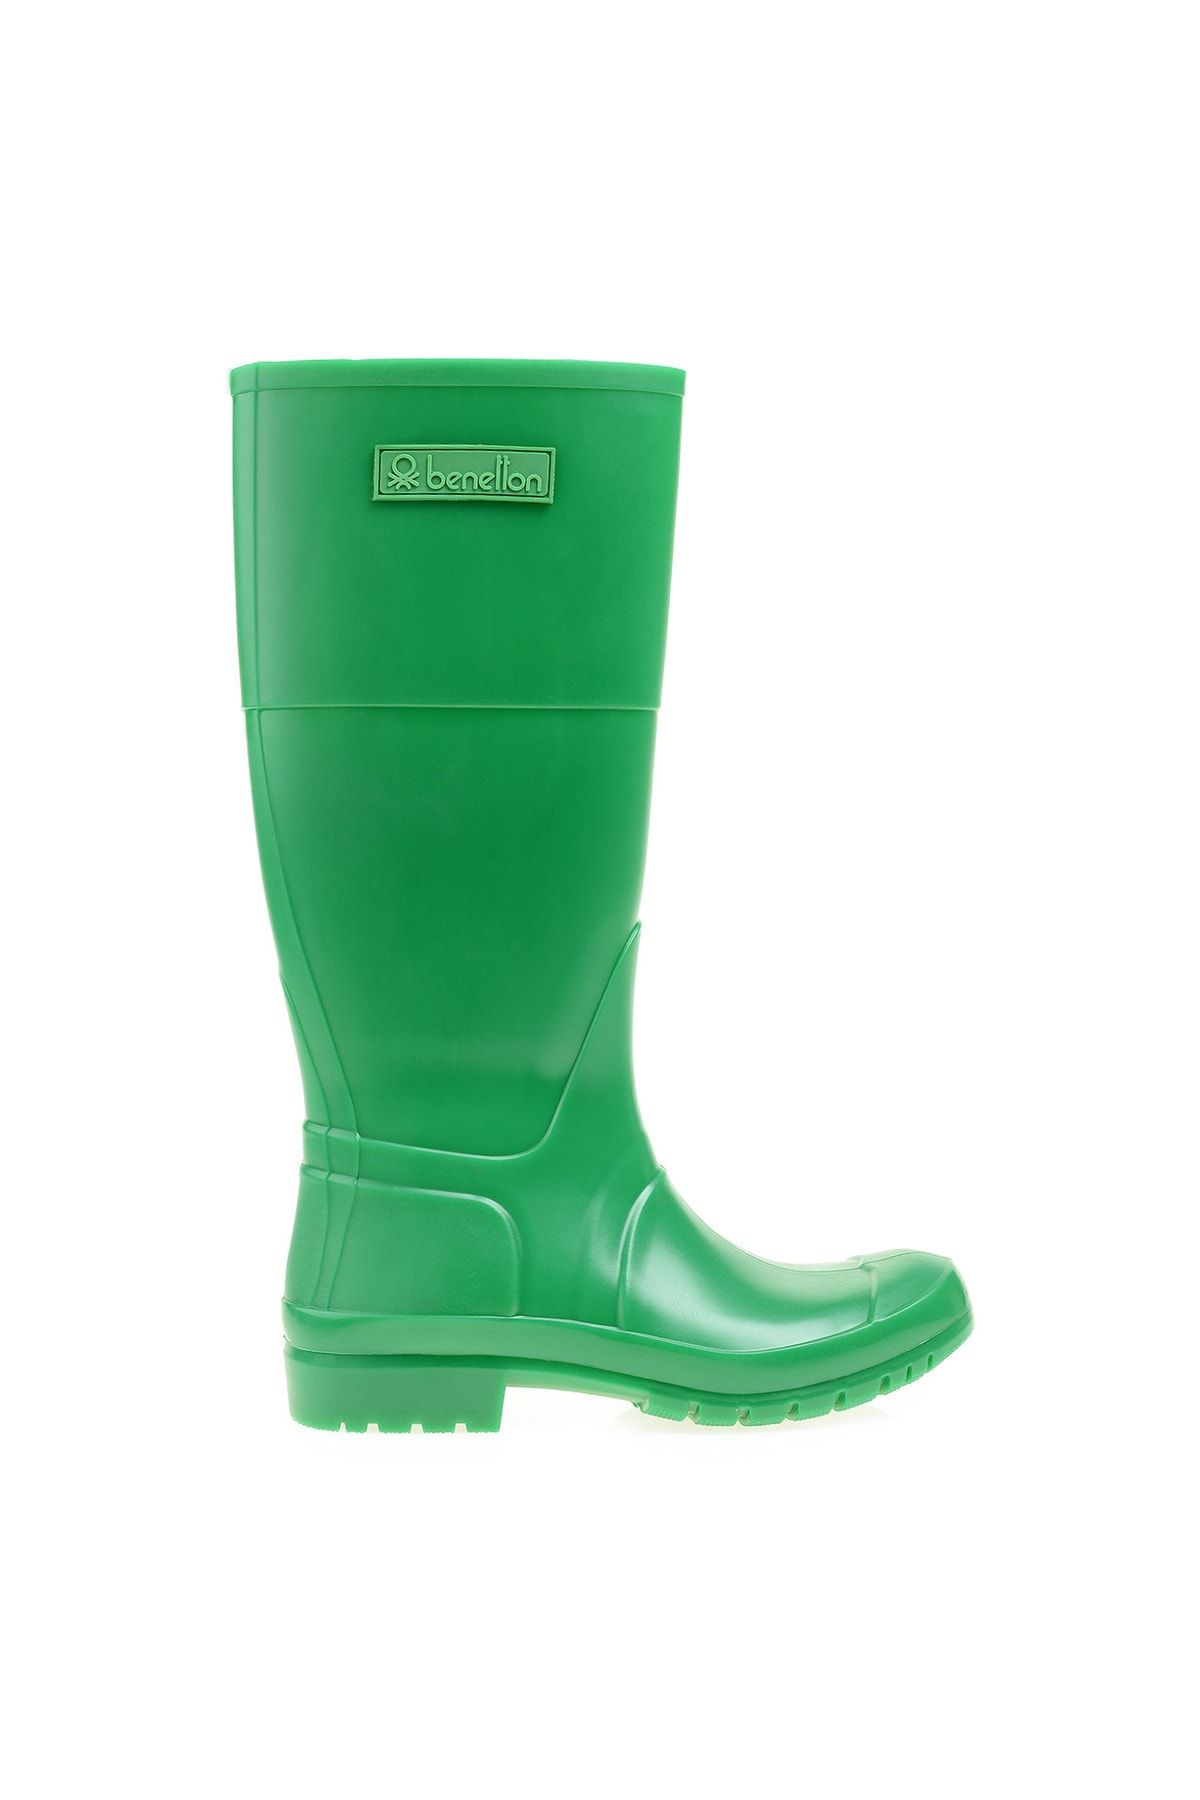 Benetton Yeşil Kadın Çizme BN-50018